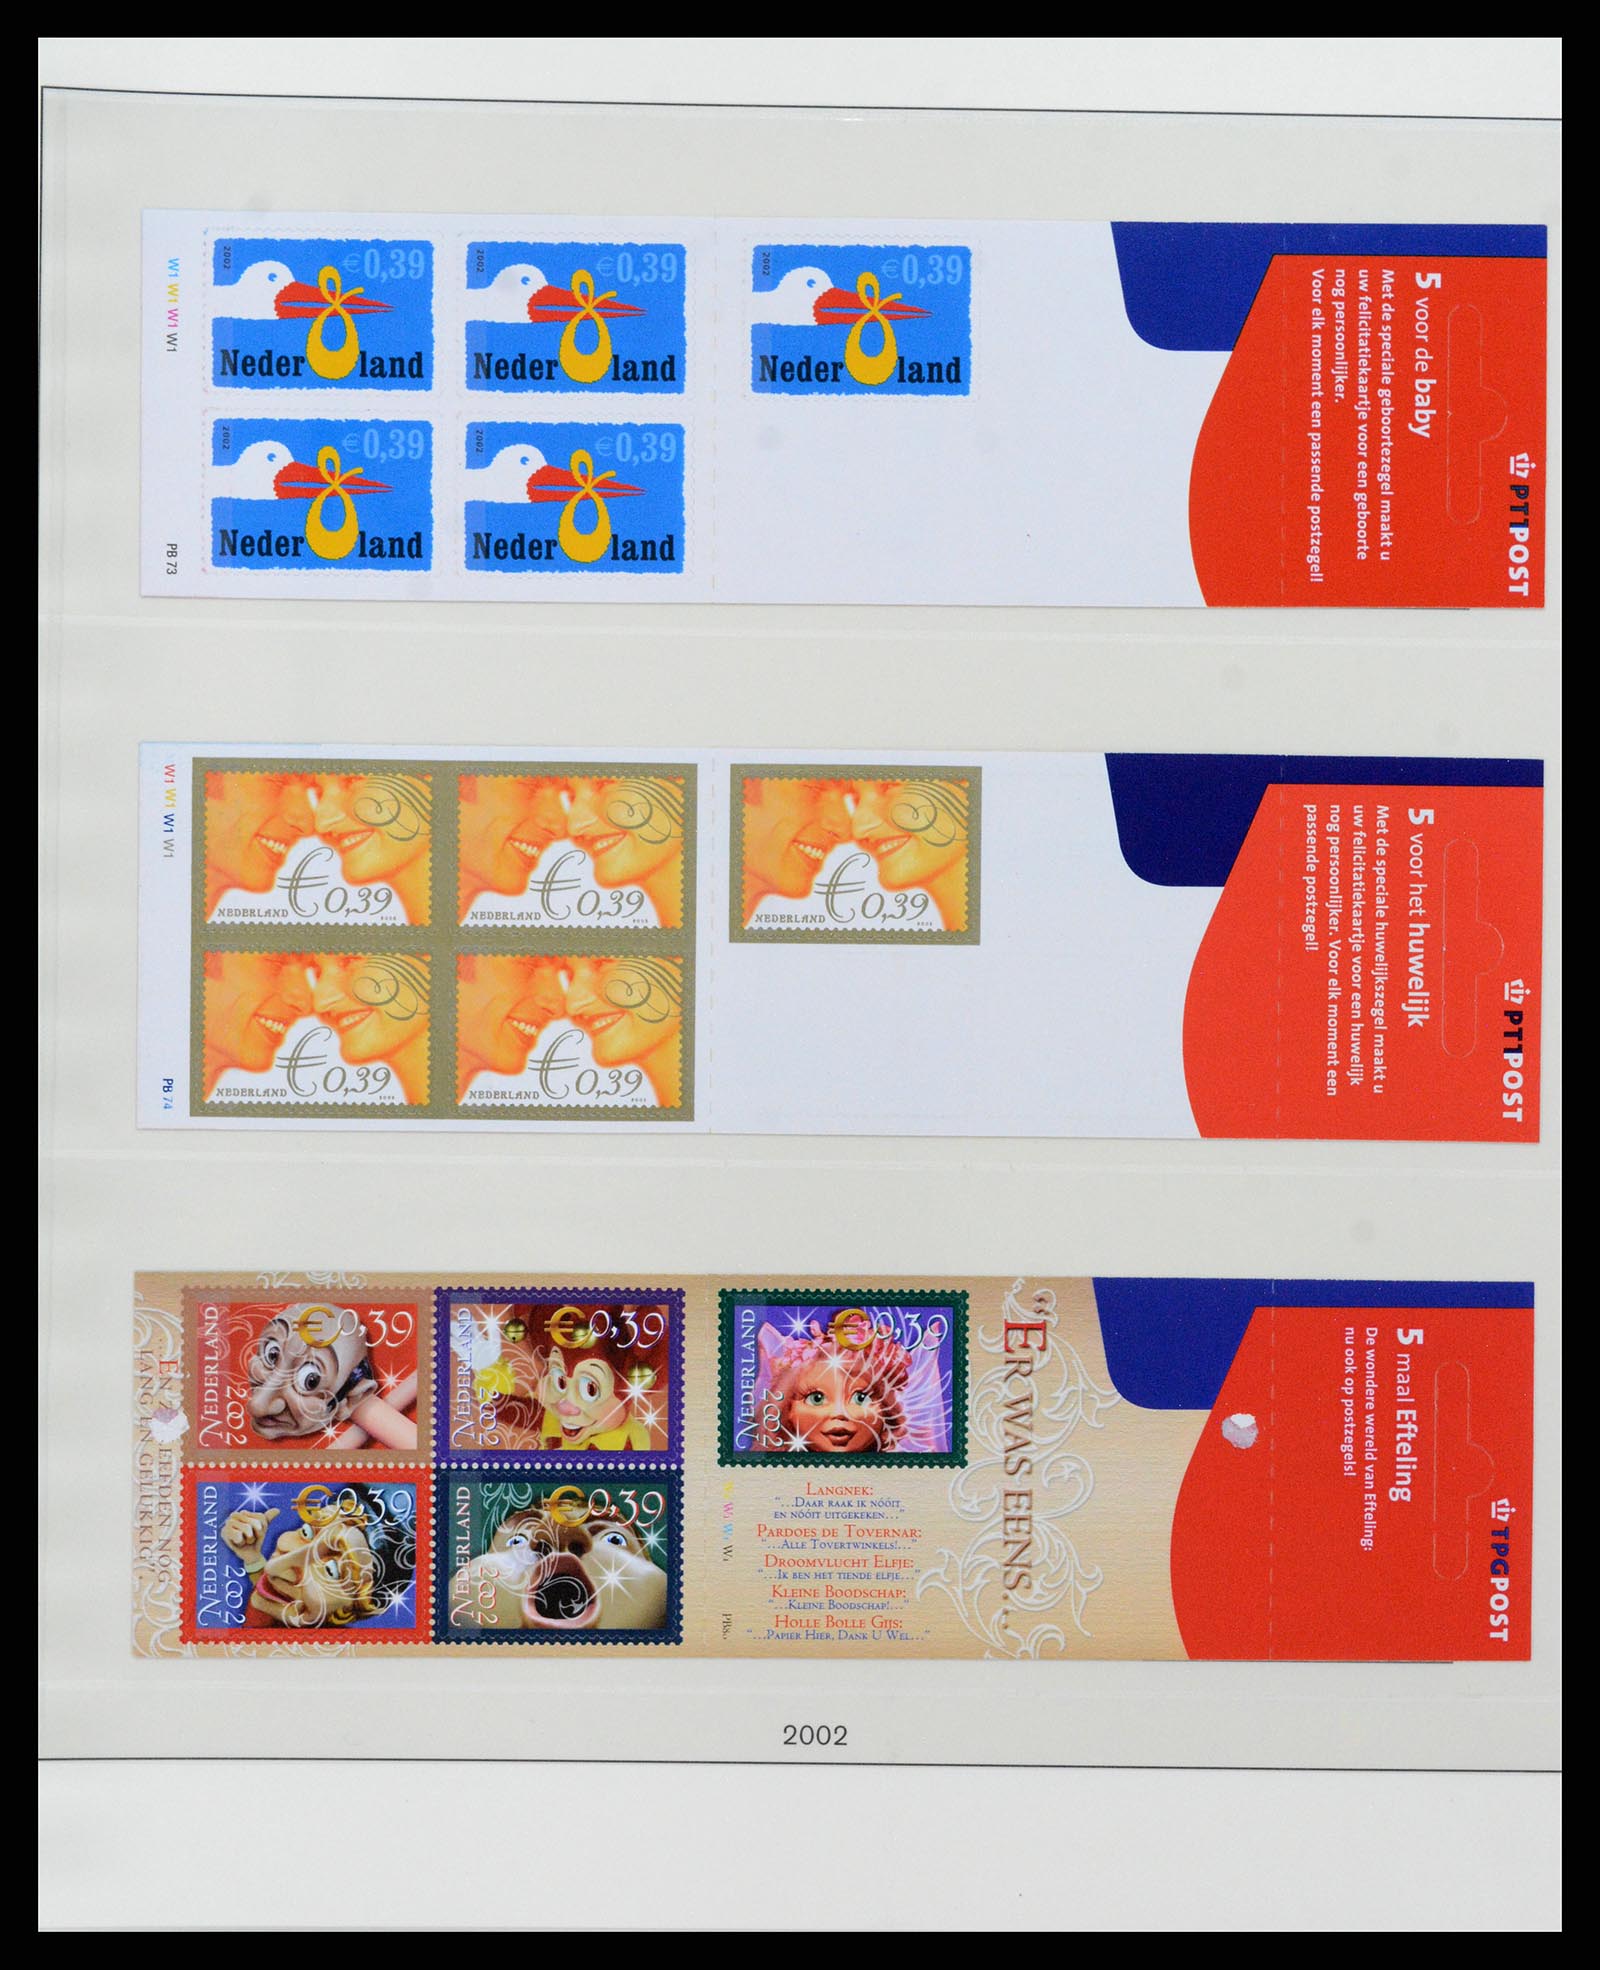 37994 039 - Stamp Collection 37994 Netherlands stampbooklets 1964-2002.